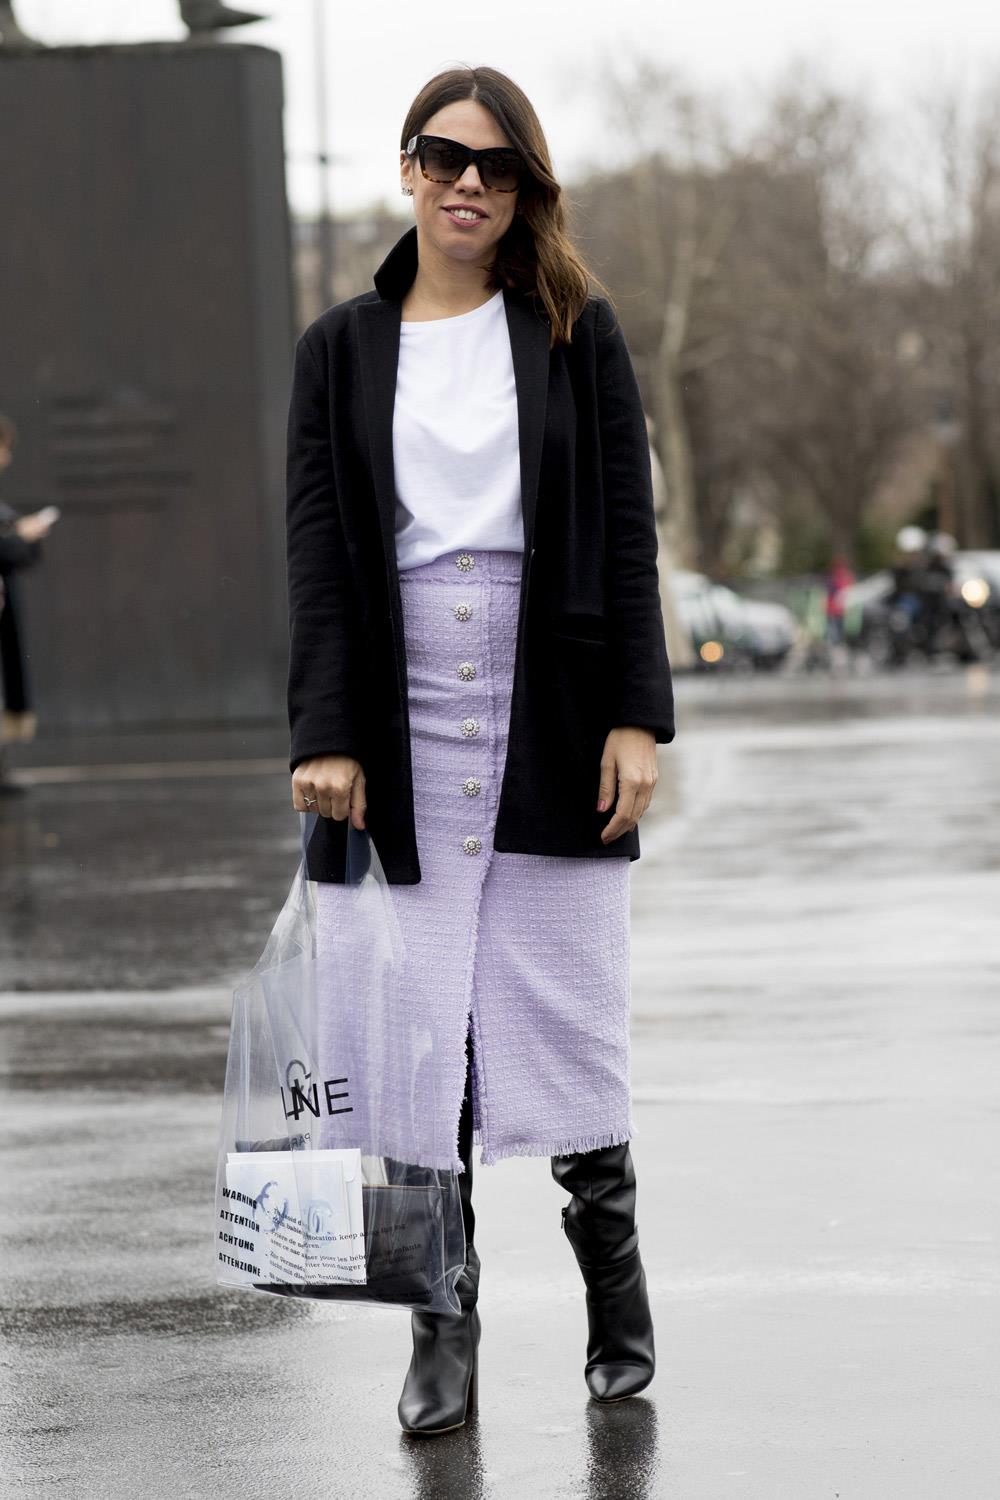 Cómo llevar falda: con looks con faldas influencers streetstyle 